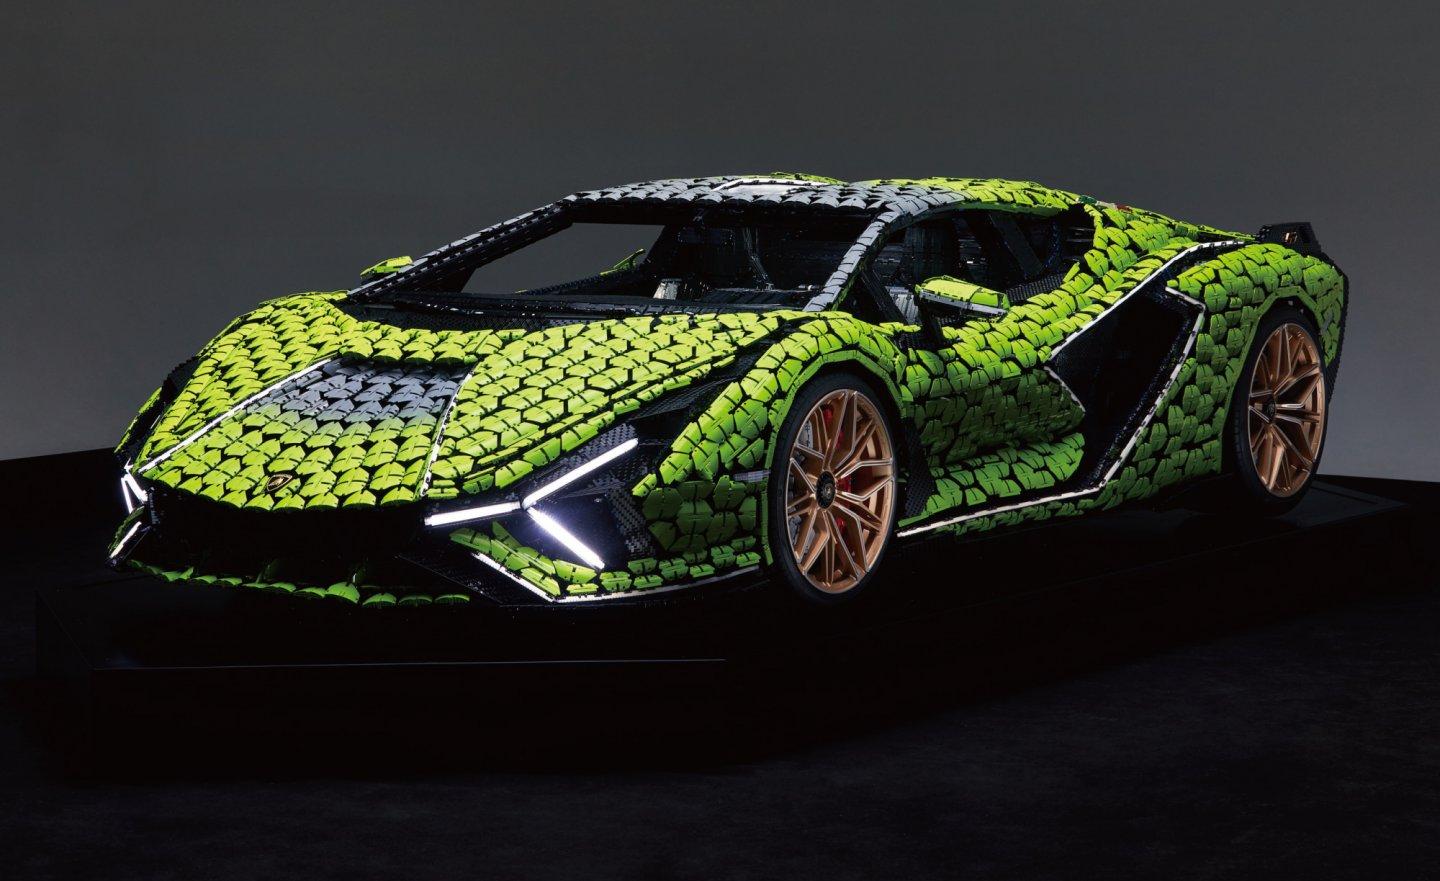 樂高打造 1:1 藍寶堅尼 Lamborghini Sián FKP 37，由 15 位高手聯手組裝 40 萬片積木而成